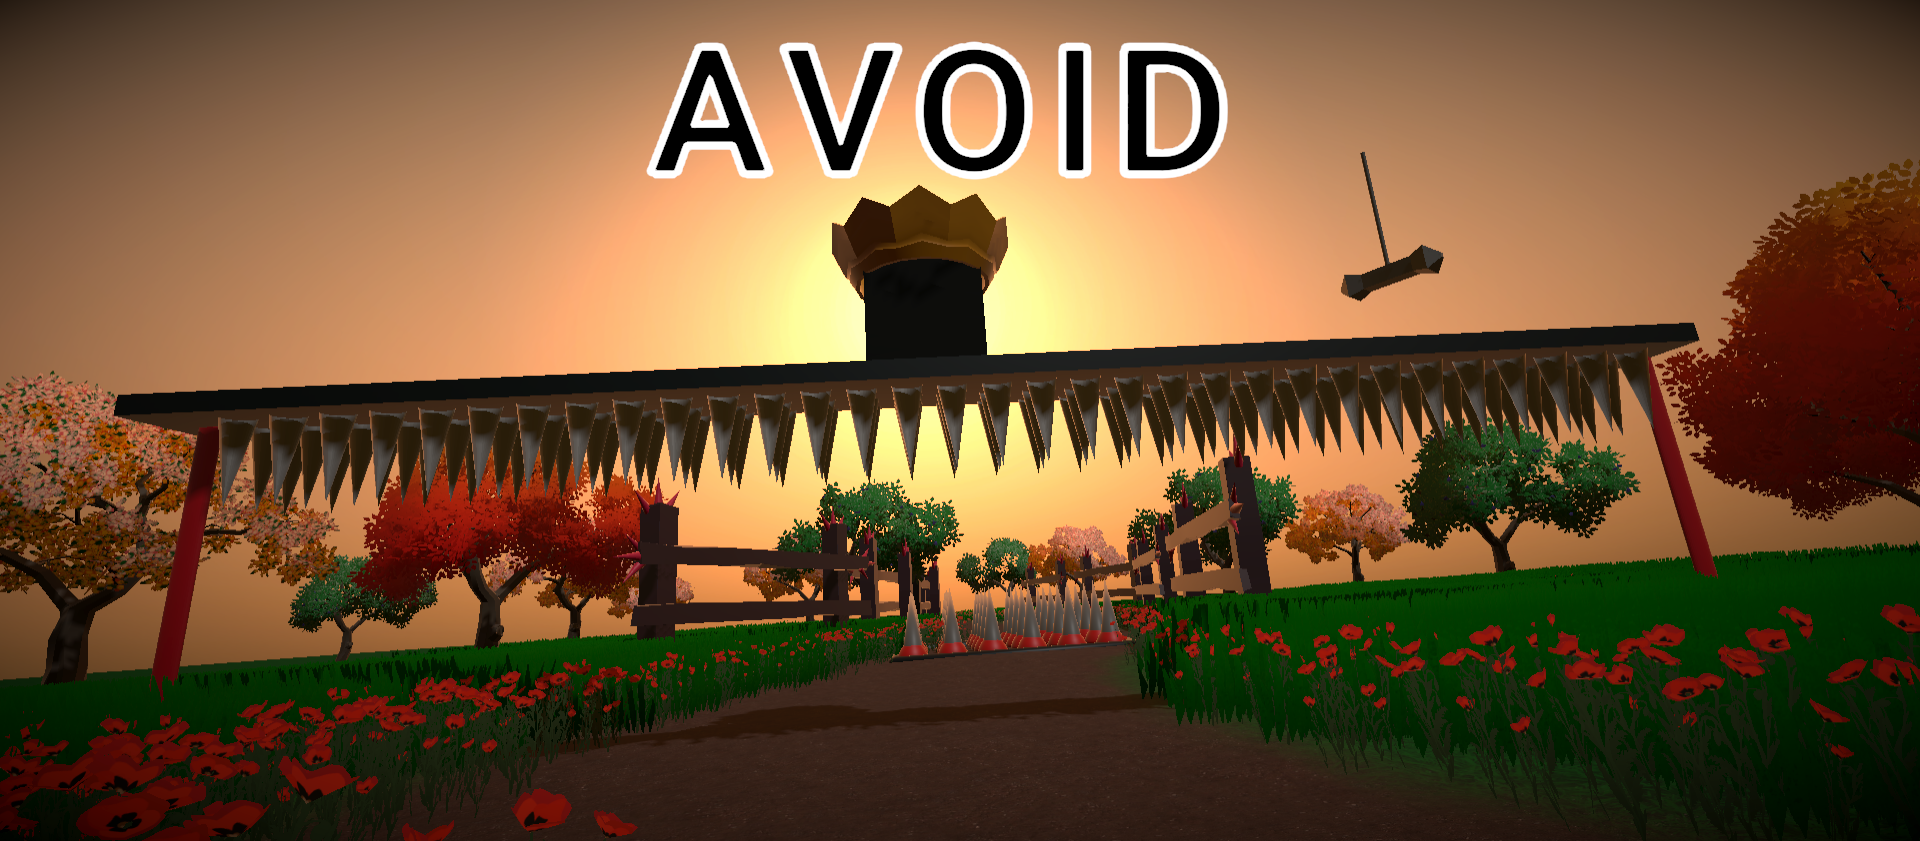 Avoid